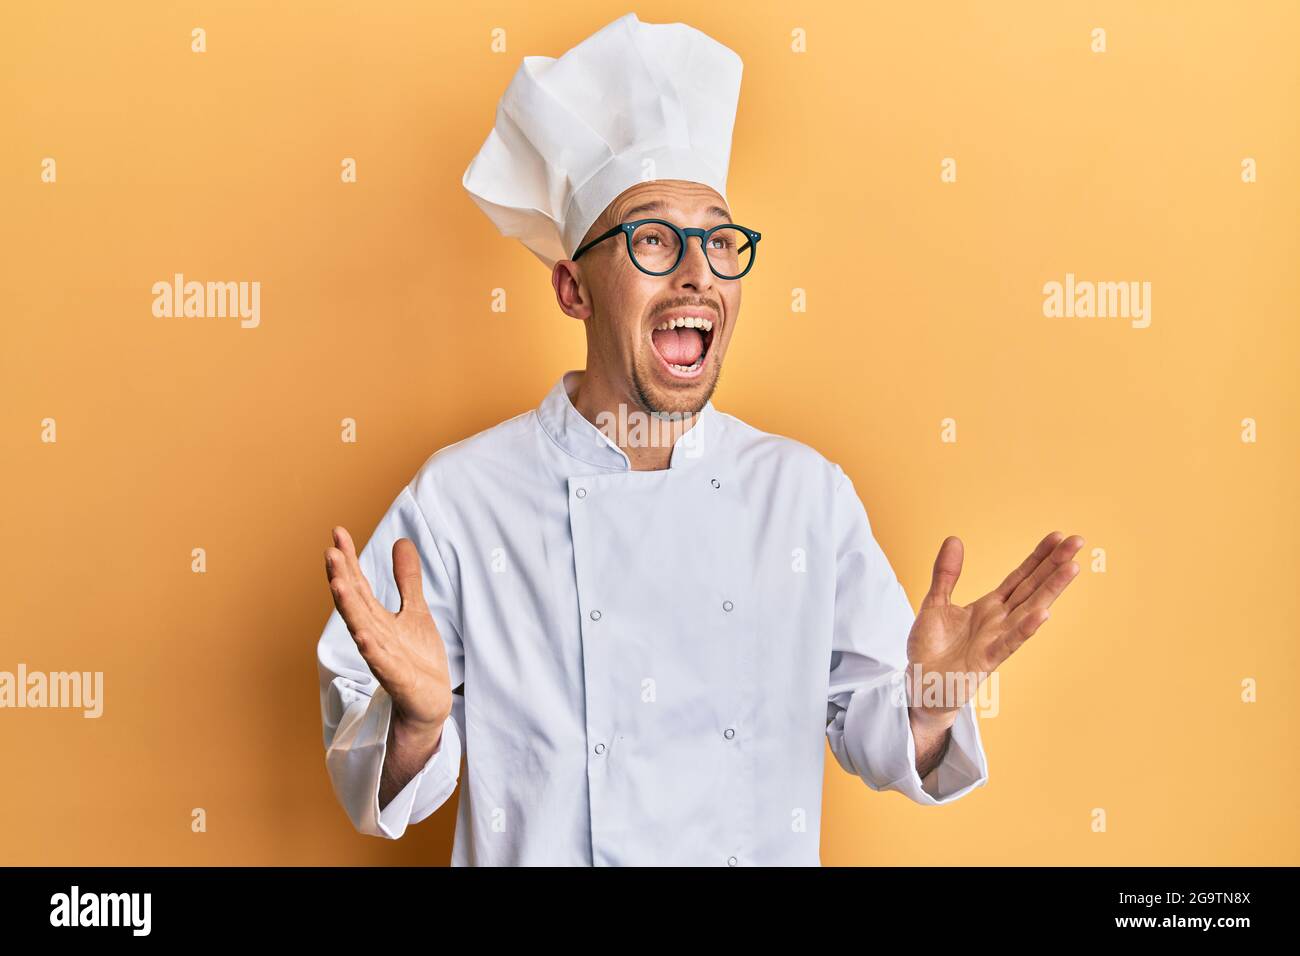 Kahlköpfiger Mann mit Bart in professioneller Koch-Uniform, verrückt und  schreiend mit aggressivem Ausdruck und erhobenen Armen. Frustration Conce  Stockfotografie - Alamy